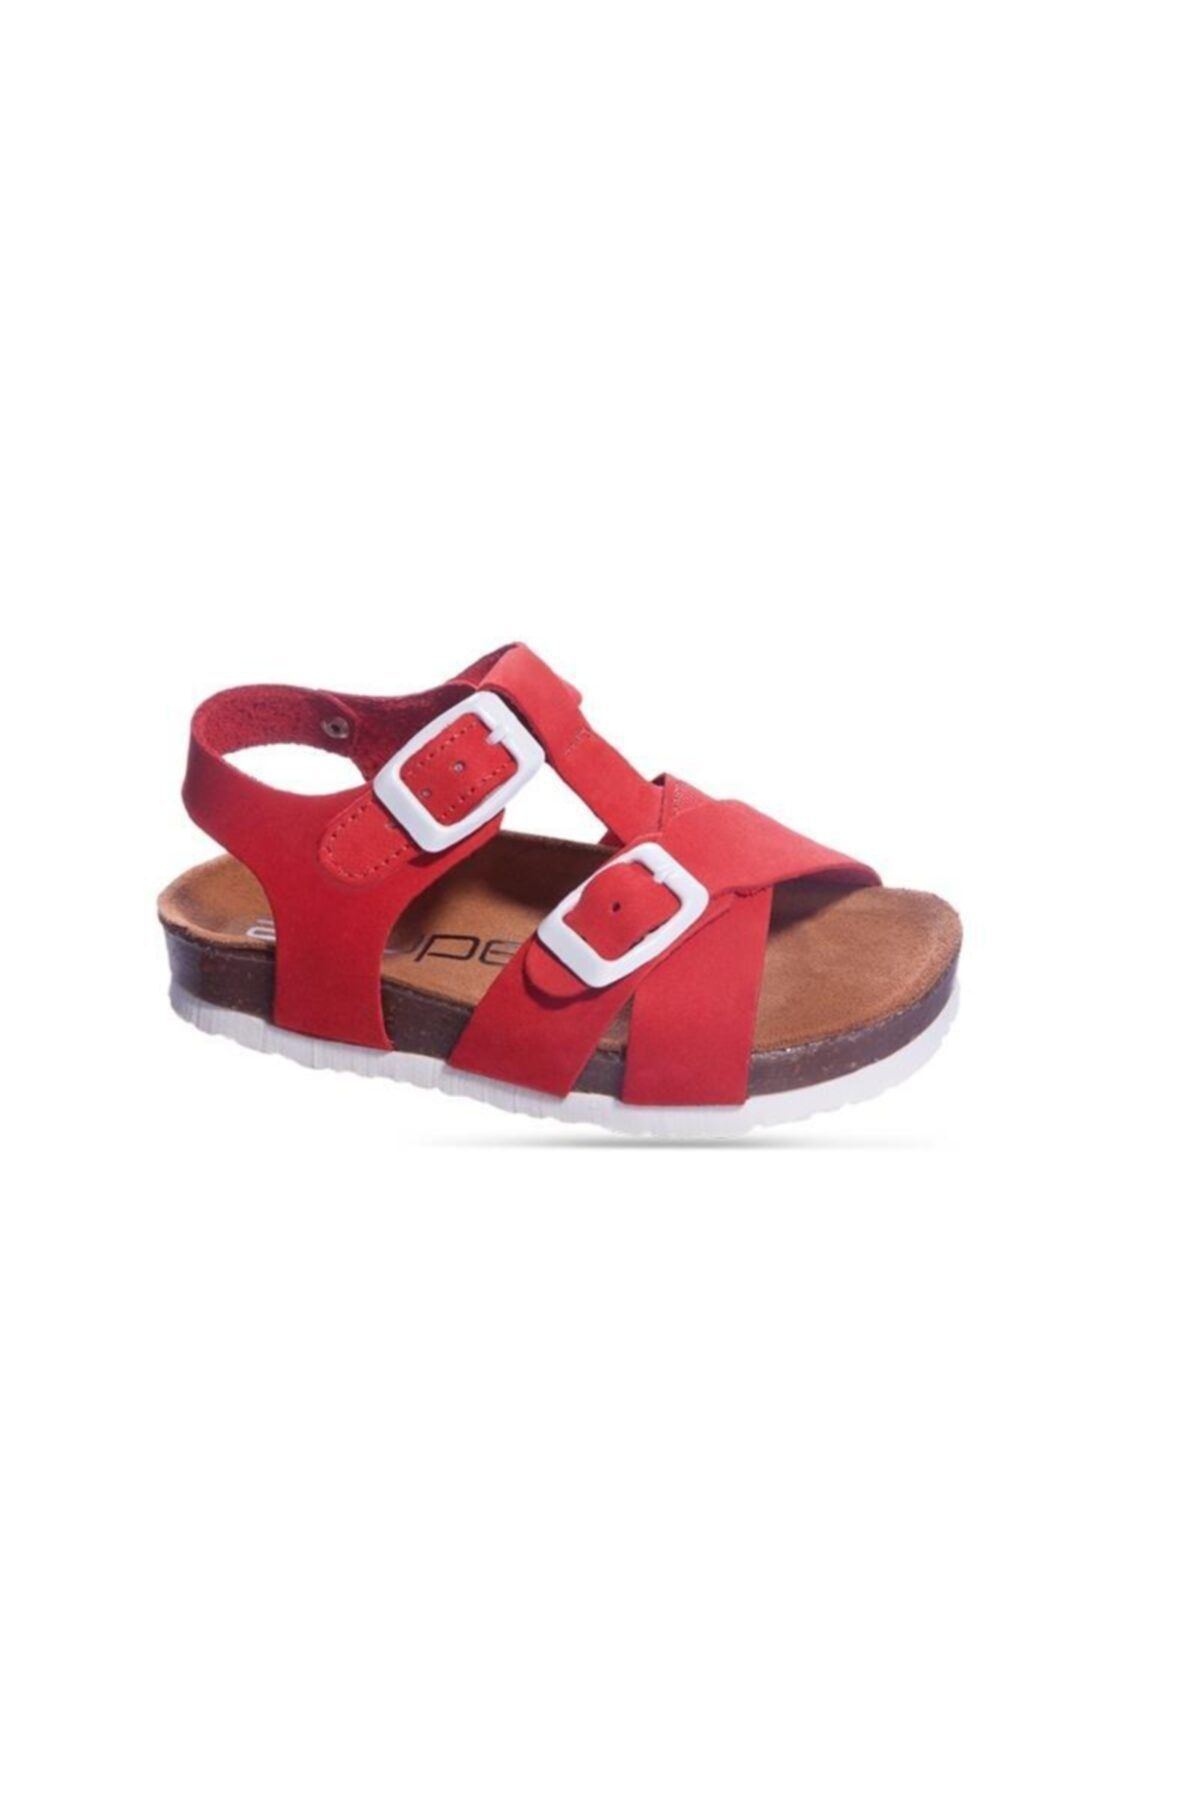 Sanbe 511 N 7103 26-30 Deri Sandalet Kırmızı